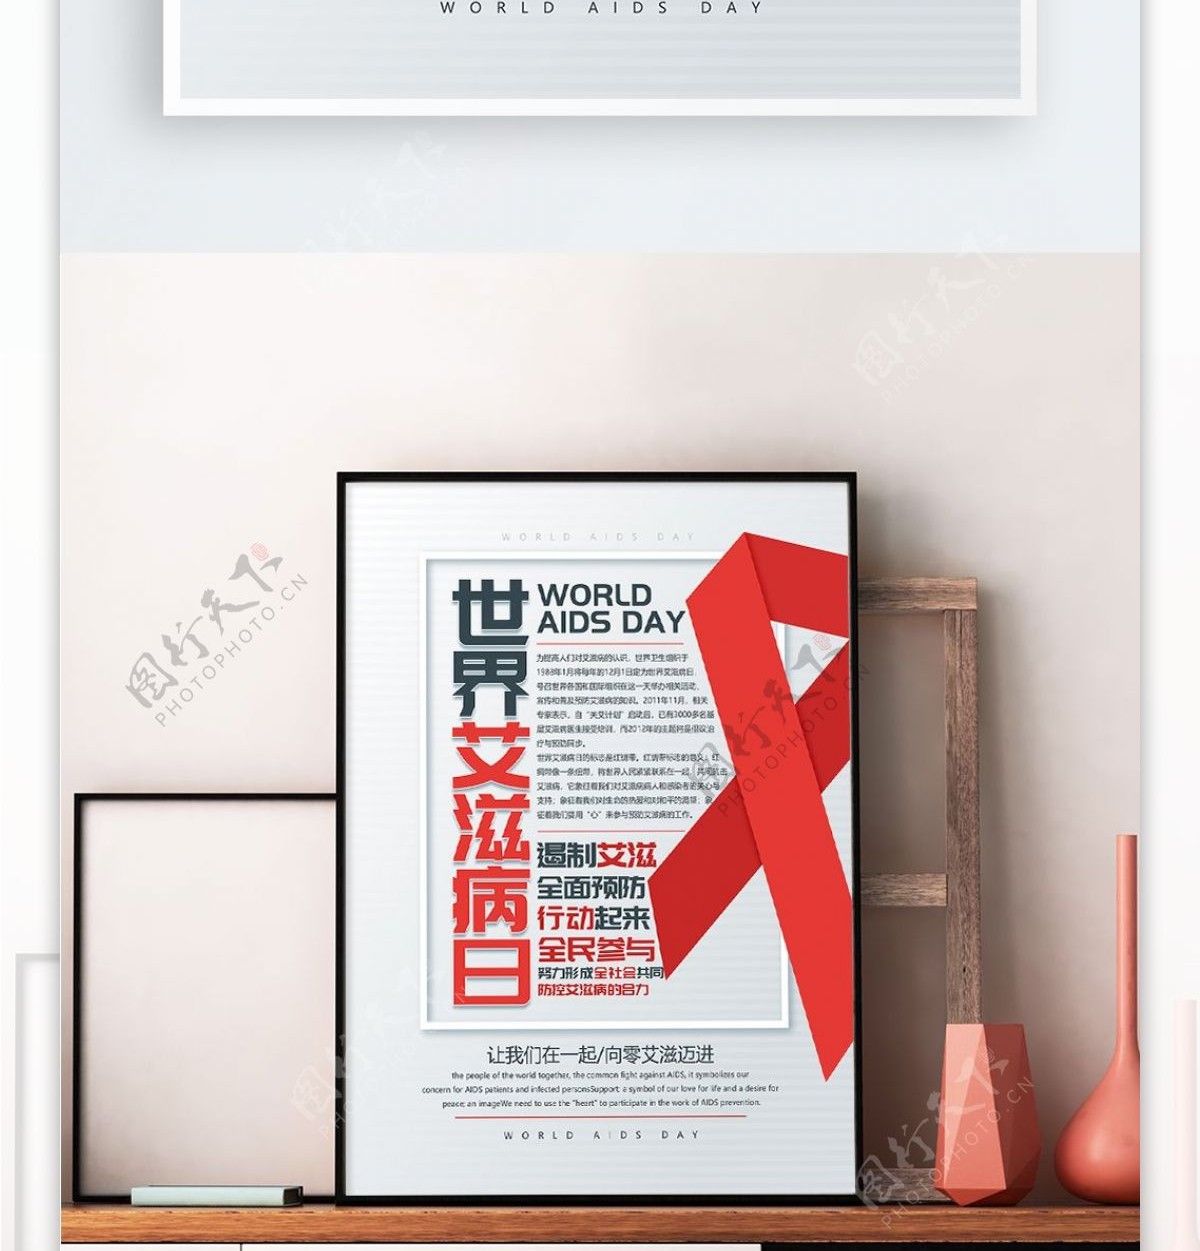 原创清新醒目世界艾滋病日活动宣传海报设计